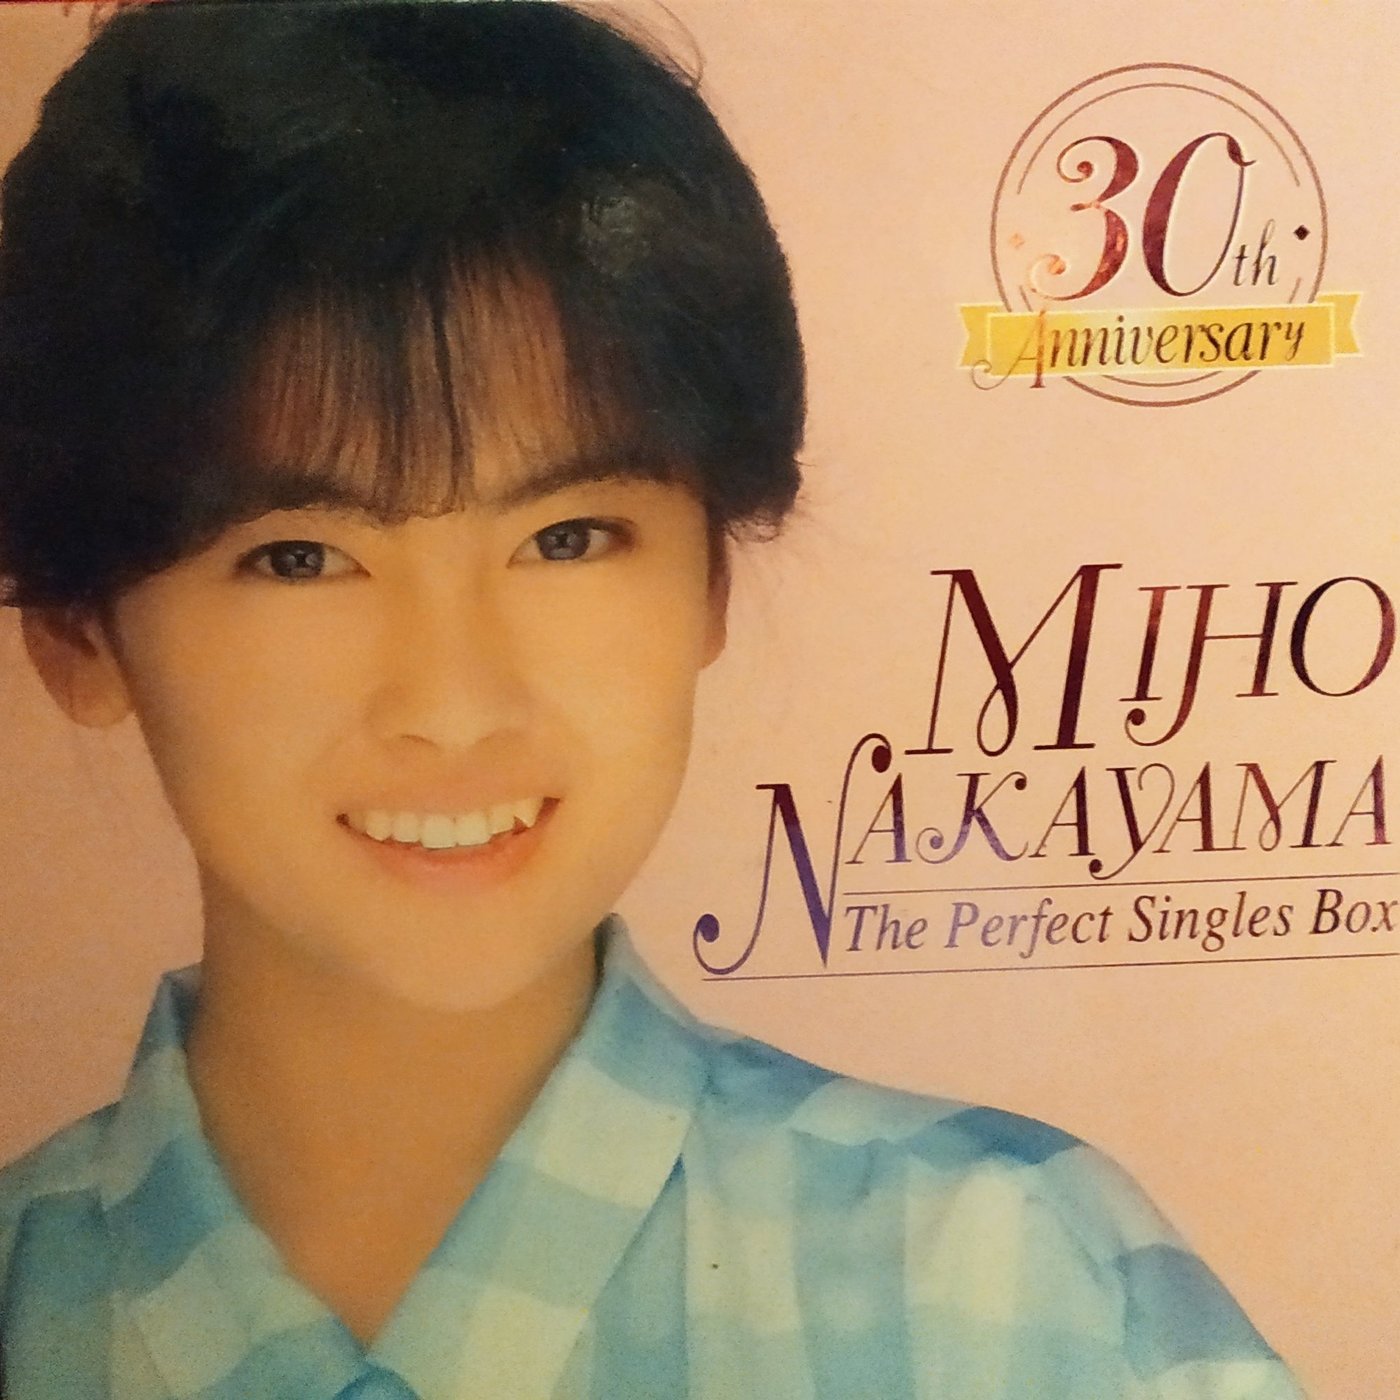 中山美穂 30th Anniversary THE PERFECT SINGLES BOX DVD付き 40CD+DVD 